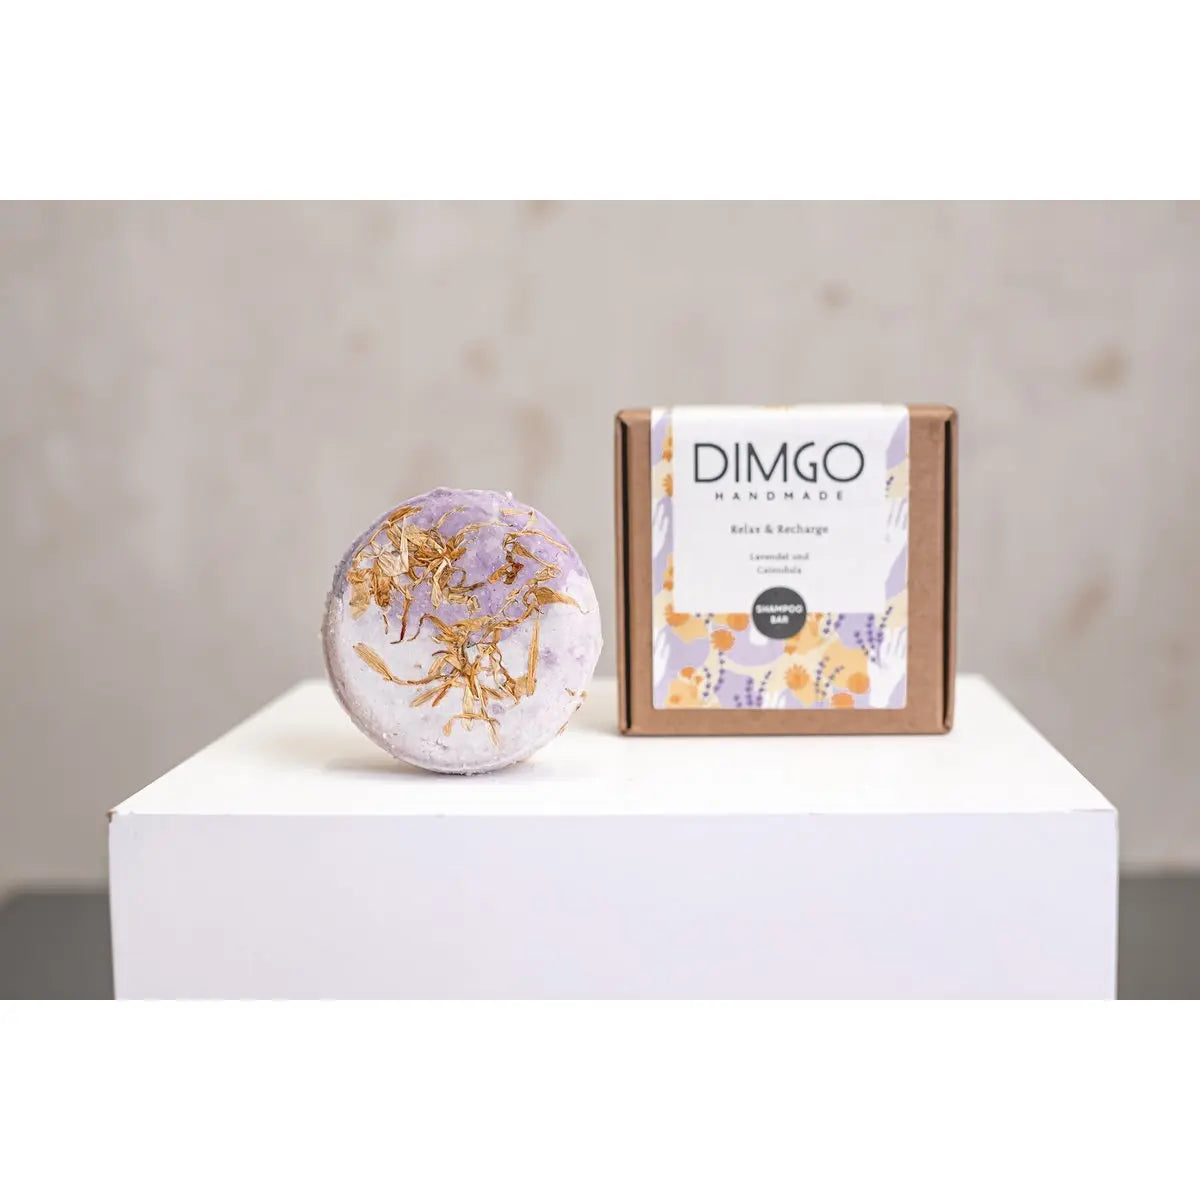 Dimgo handmade relax & recharge shampoobar handgemaakteskincare